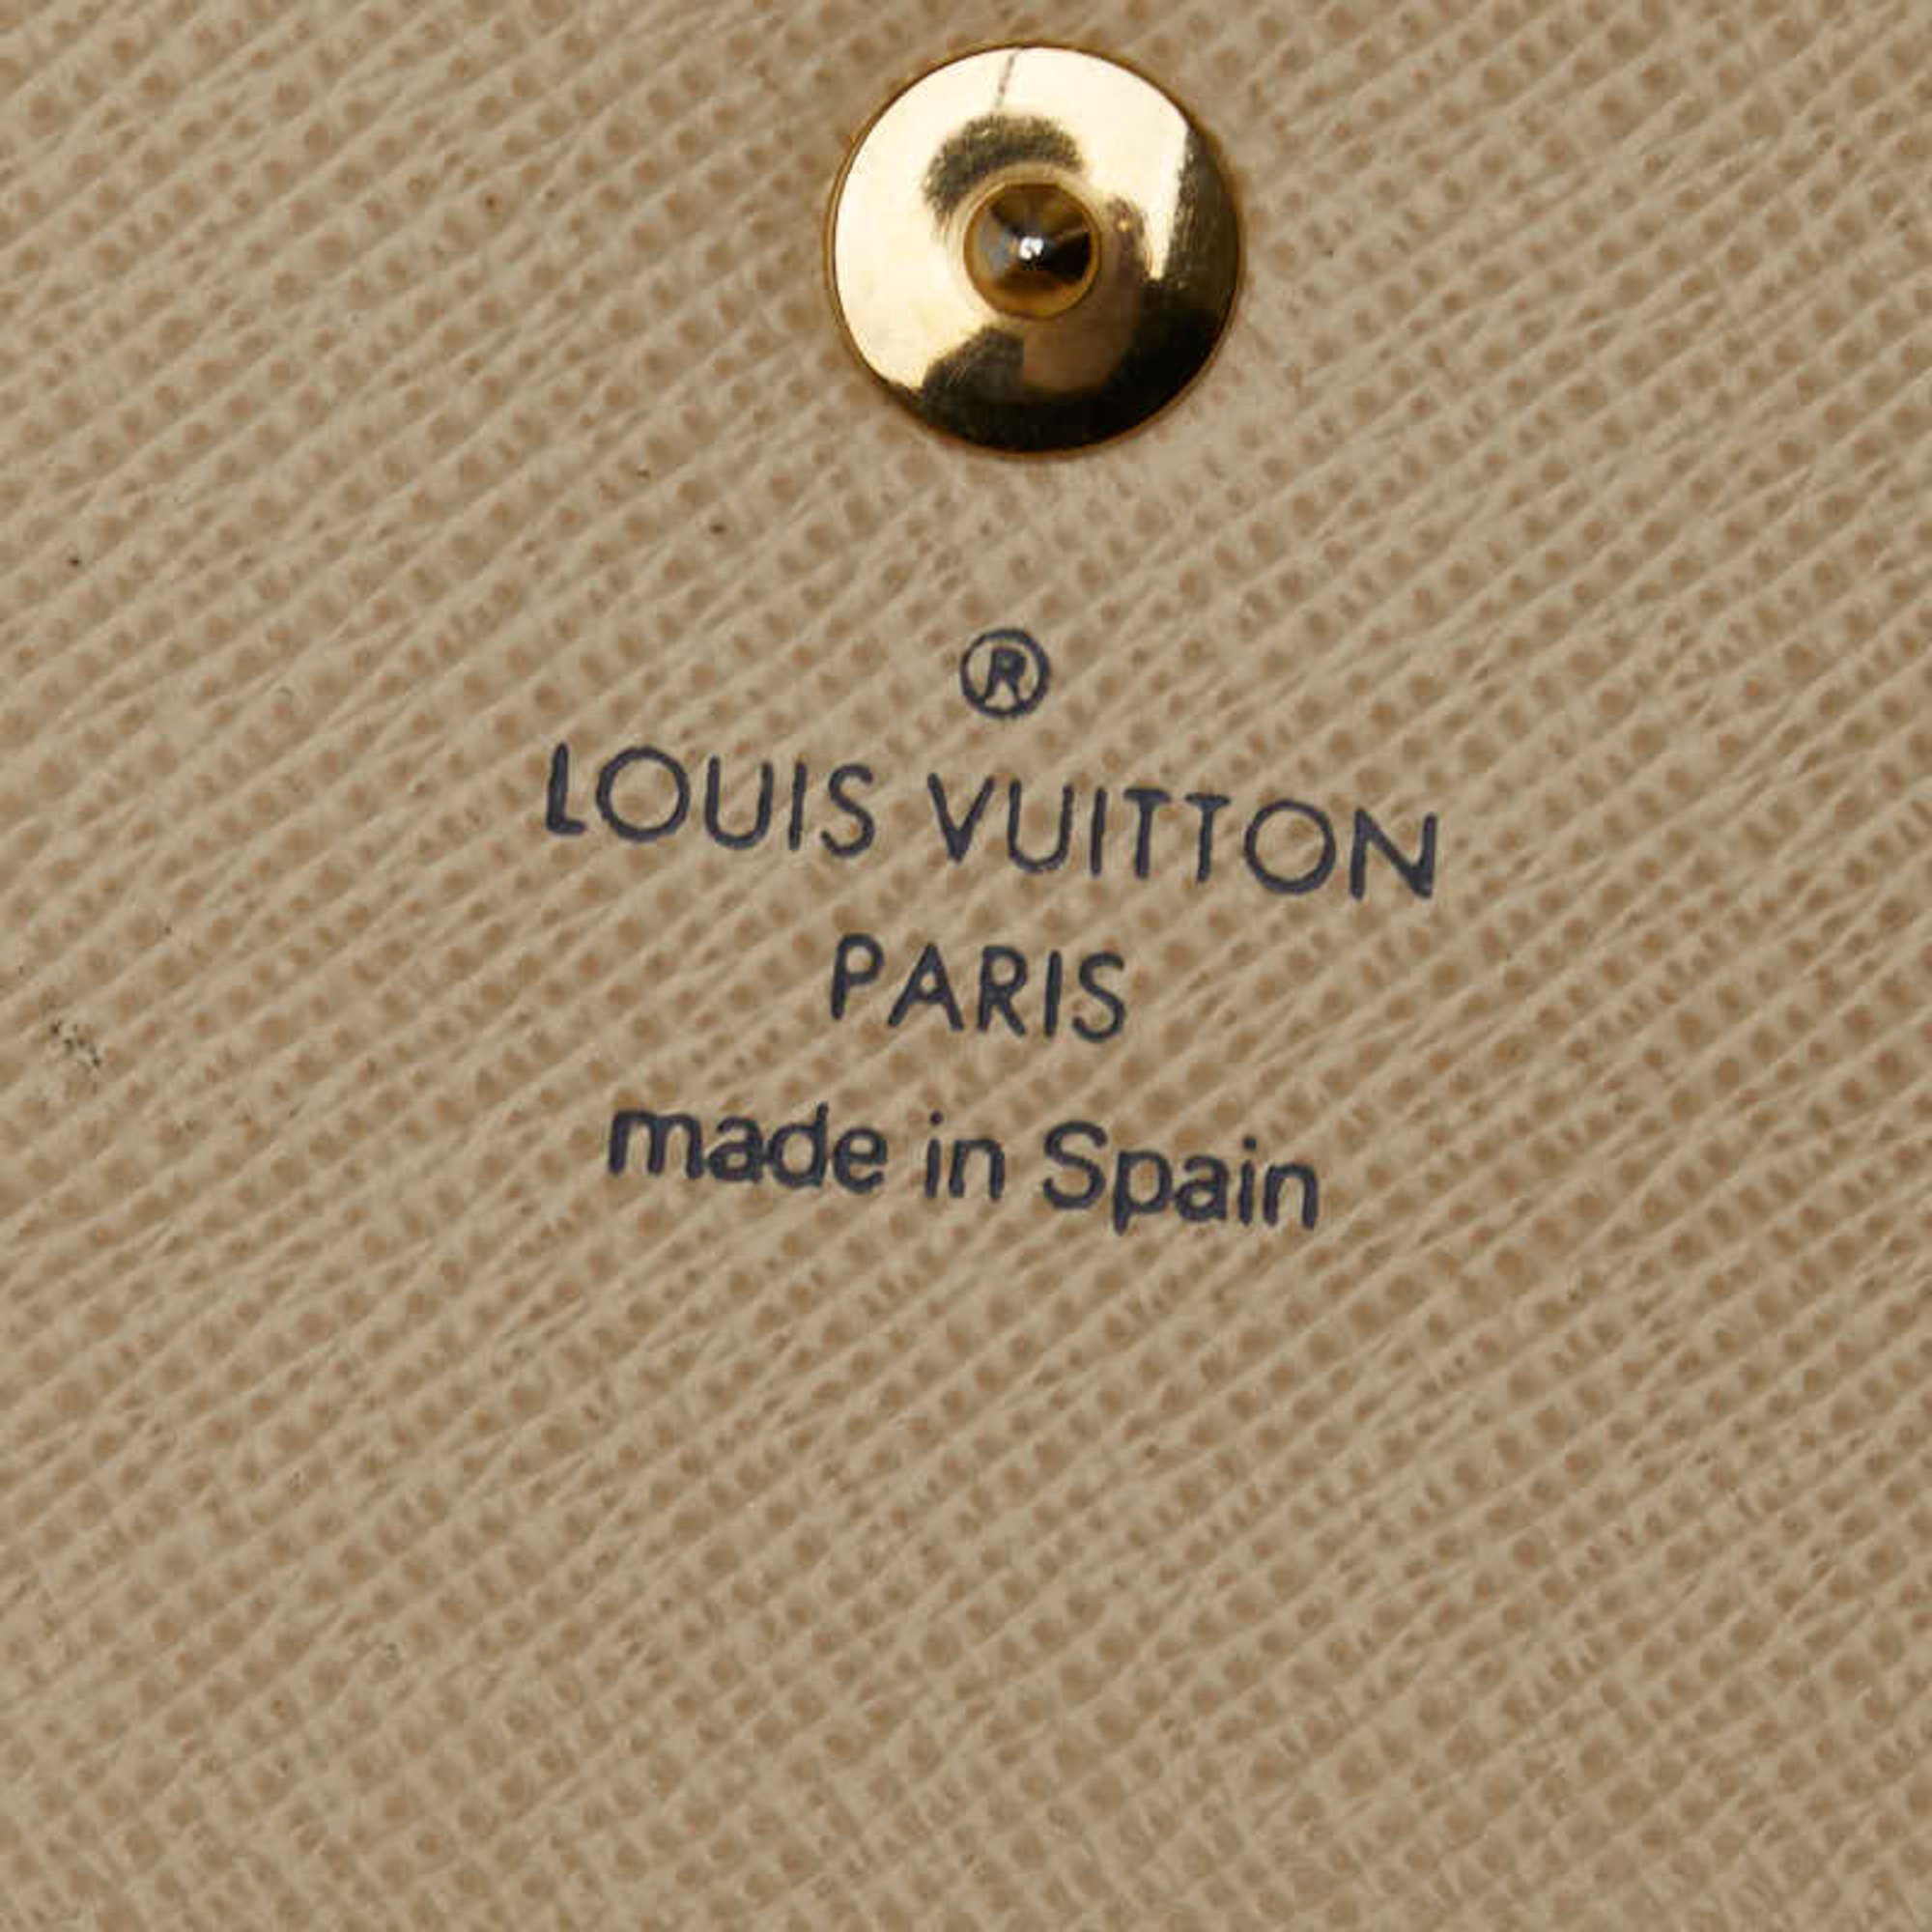 Louis Vuitton Damier Azur Alexandra Bi-fold Wallet N63068 White PVC Leather Women's LOUIS VUITTON